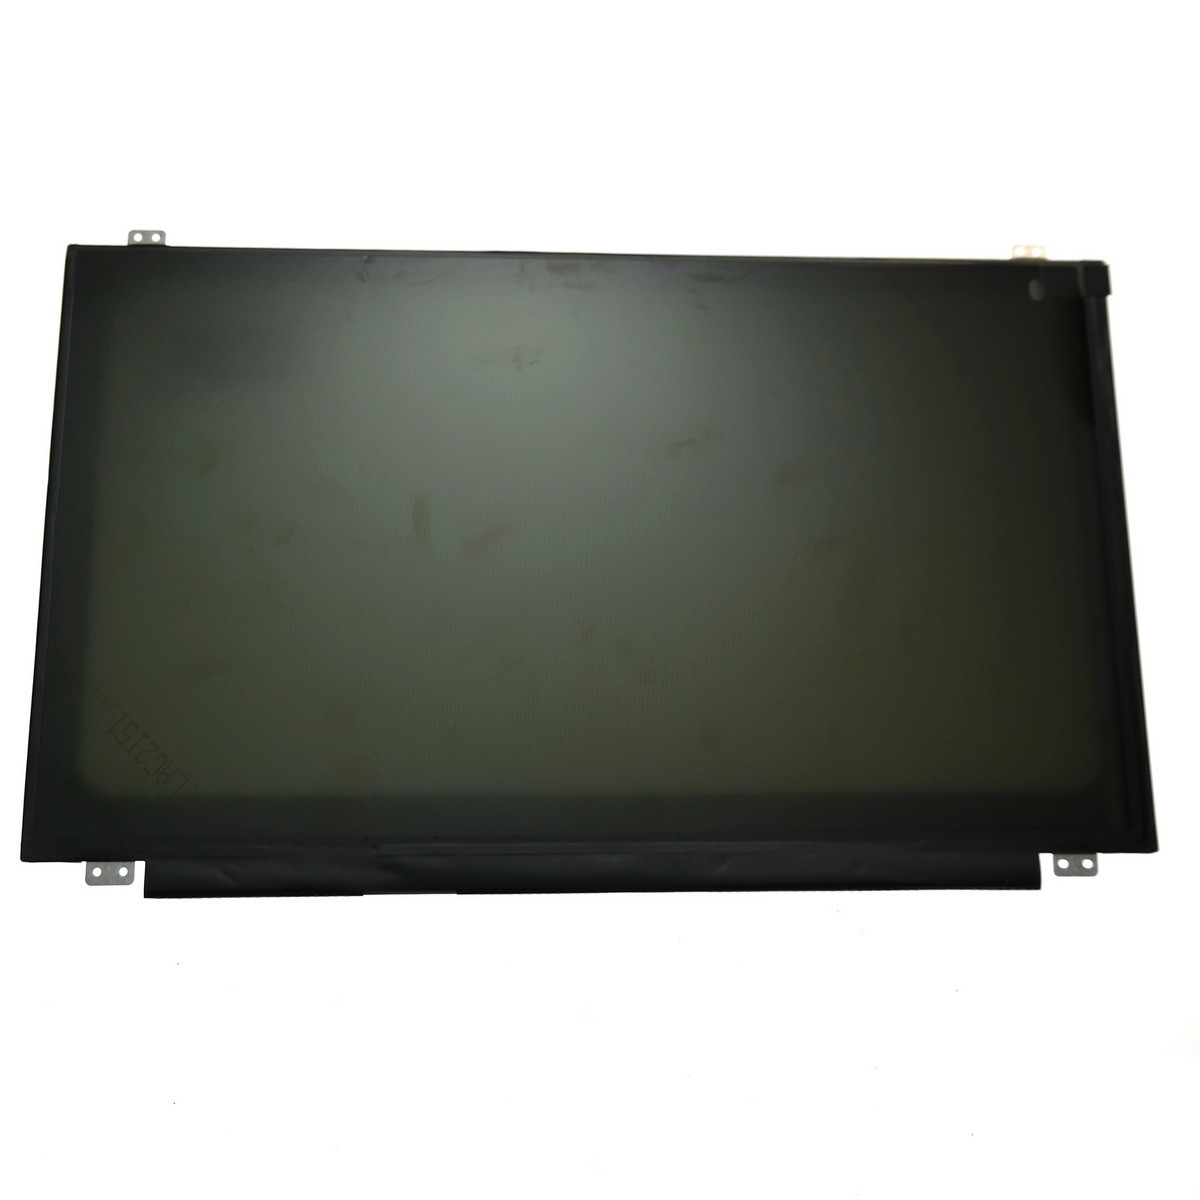 Экран для ноутбука Acer Aspire V5-571 V5-572 V5-572G V5-573 60hz 30 pin edp 1366x768 nt156whm-n42 мат